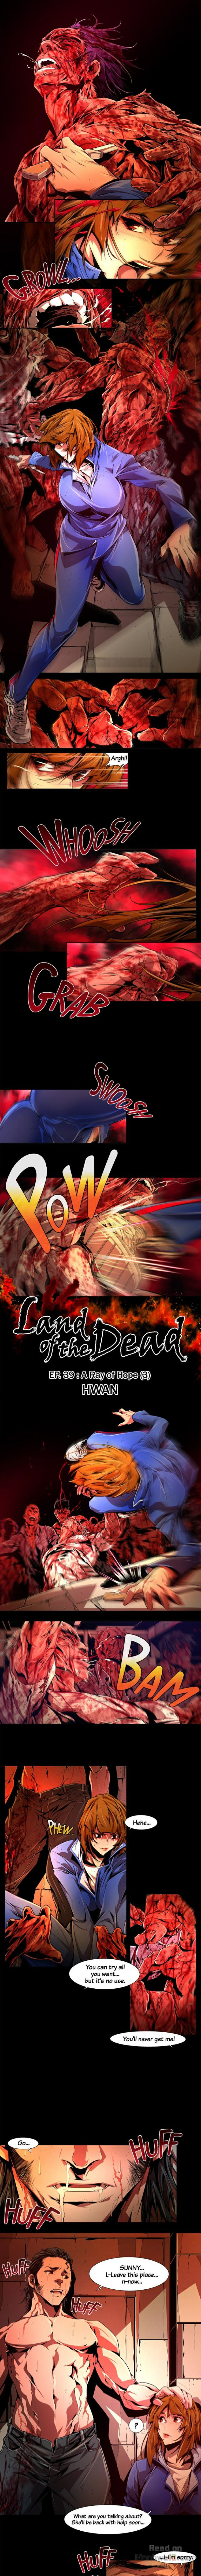 Watch image manhwa Land Of The Dead - Chapter 40 END - ZEzk0KLEdNd7mvT - ManhwaXX.net